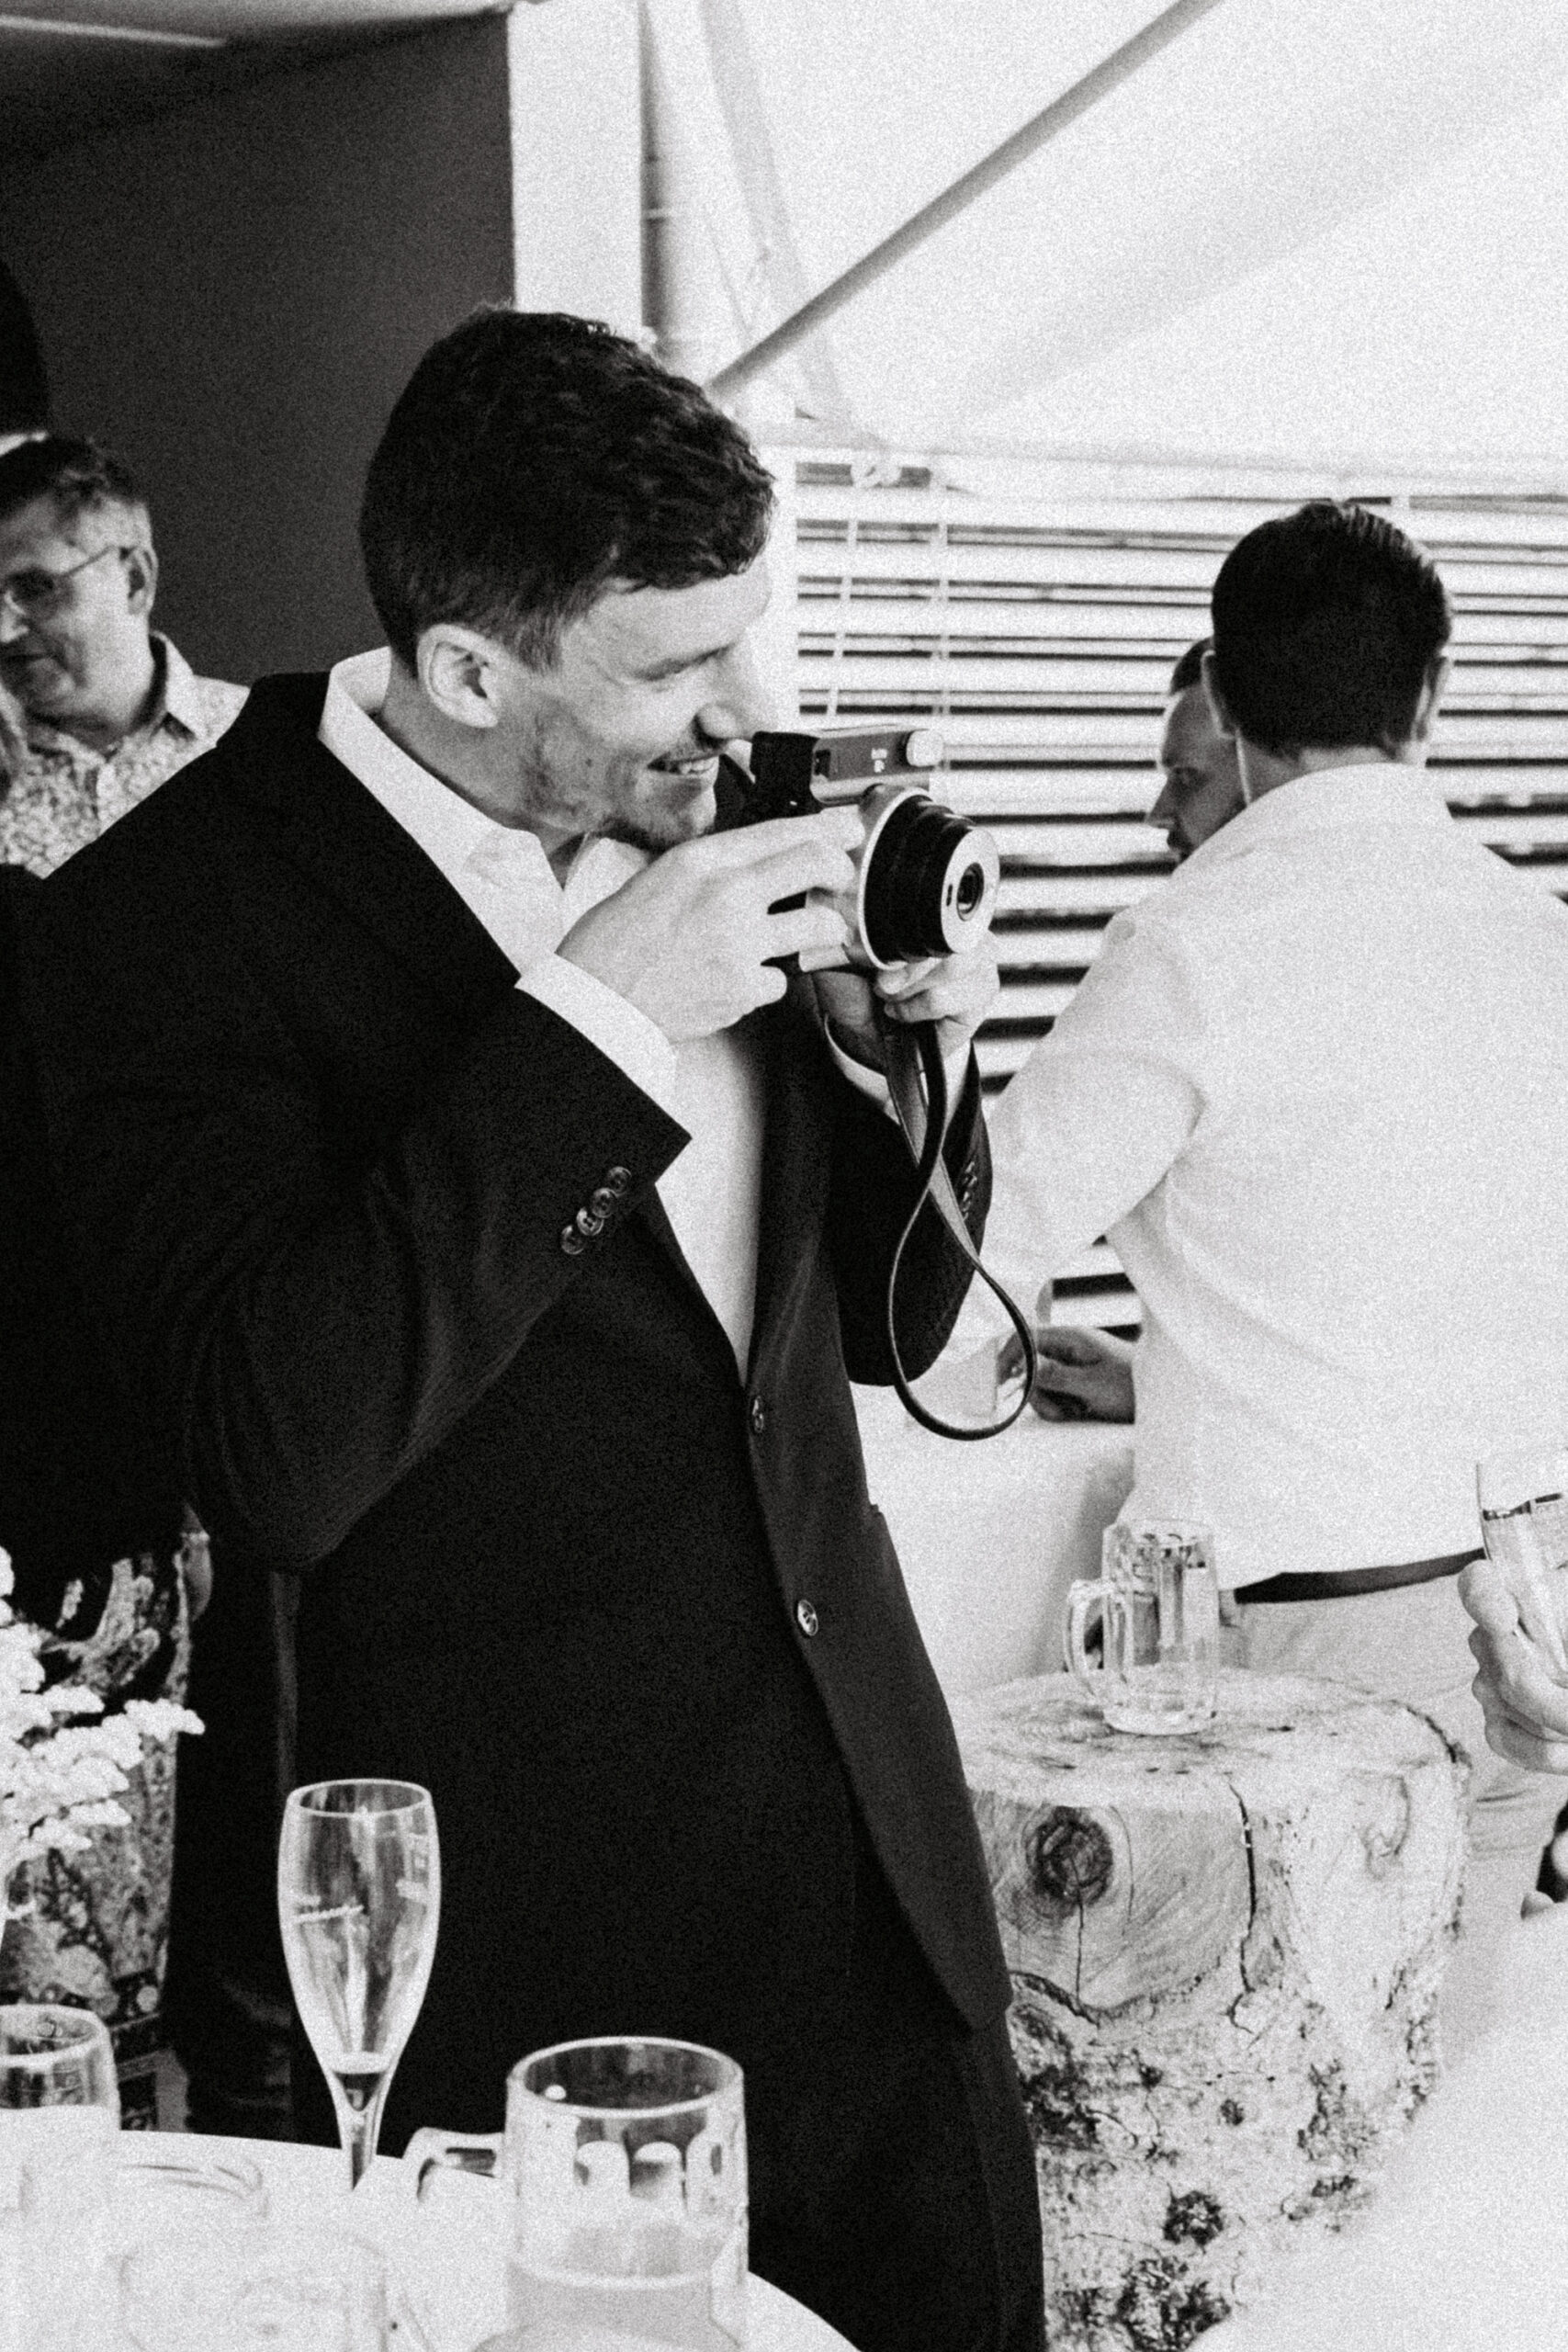 Hochzeitgast fotofrafiert andere Gäste mit der Polaroidkamera